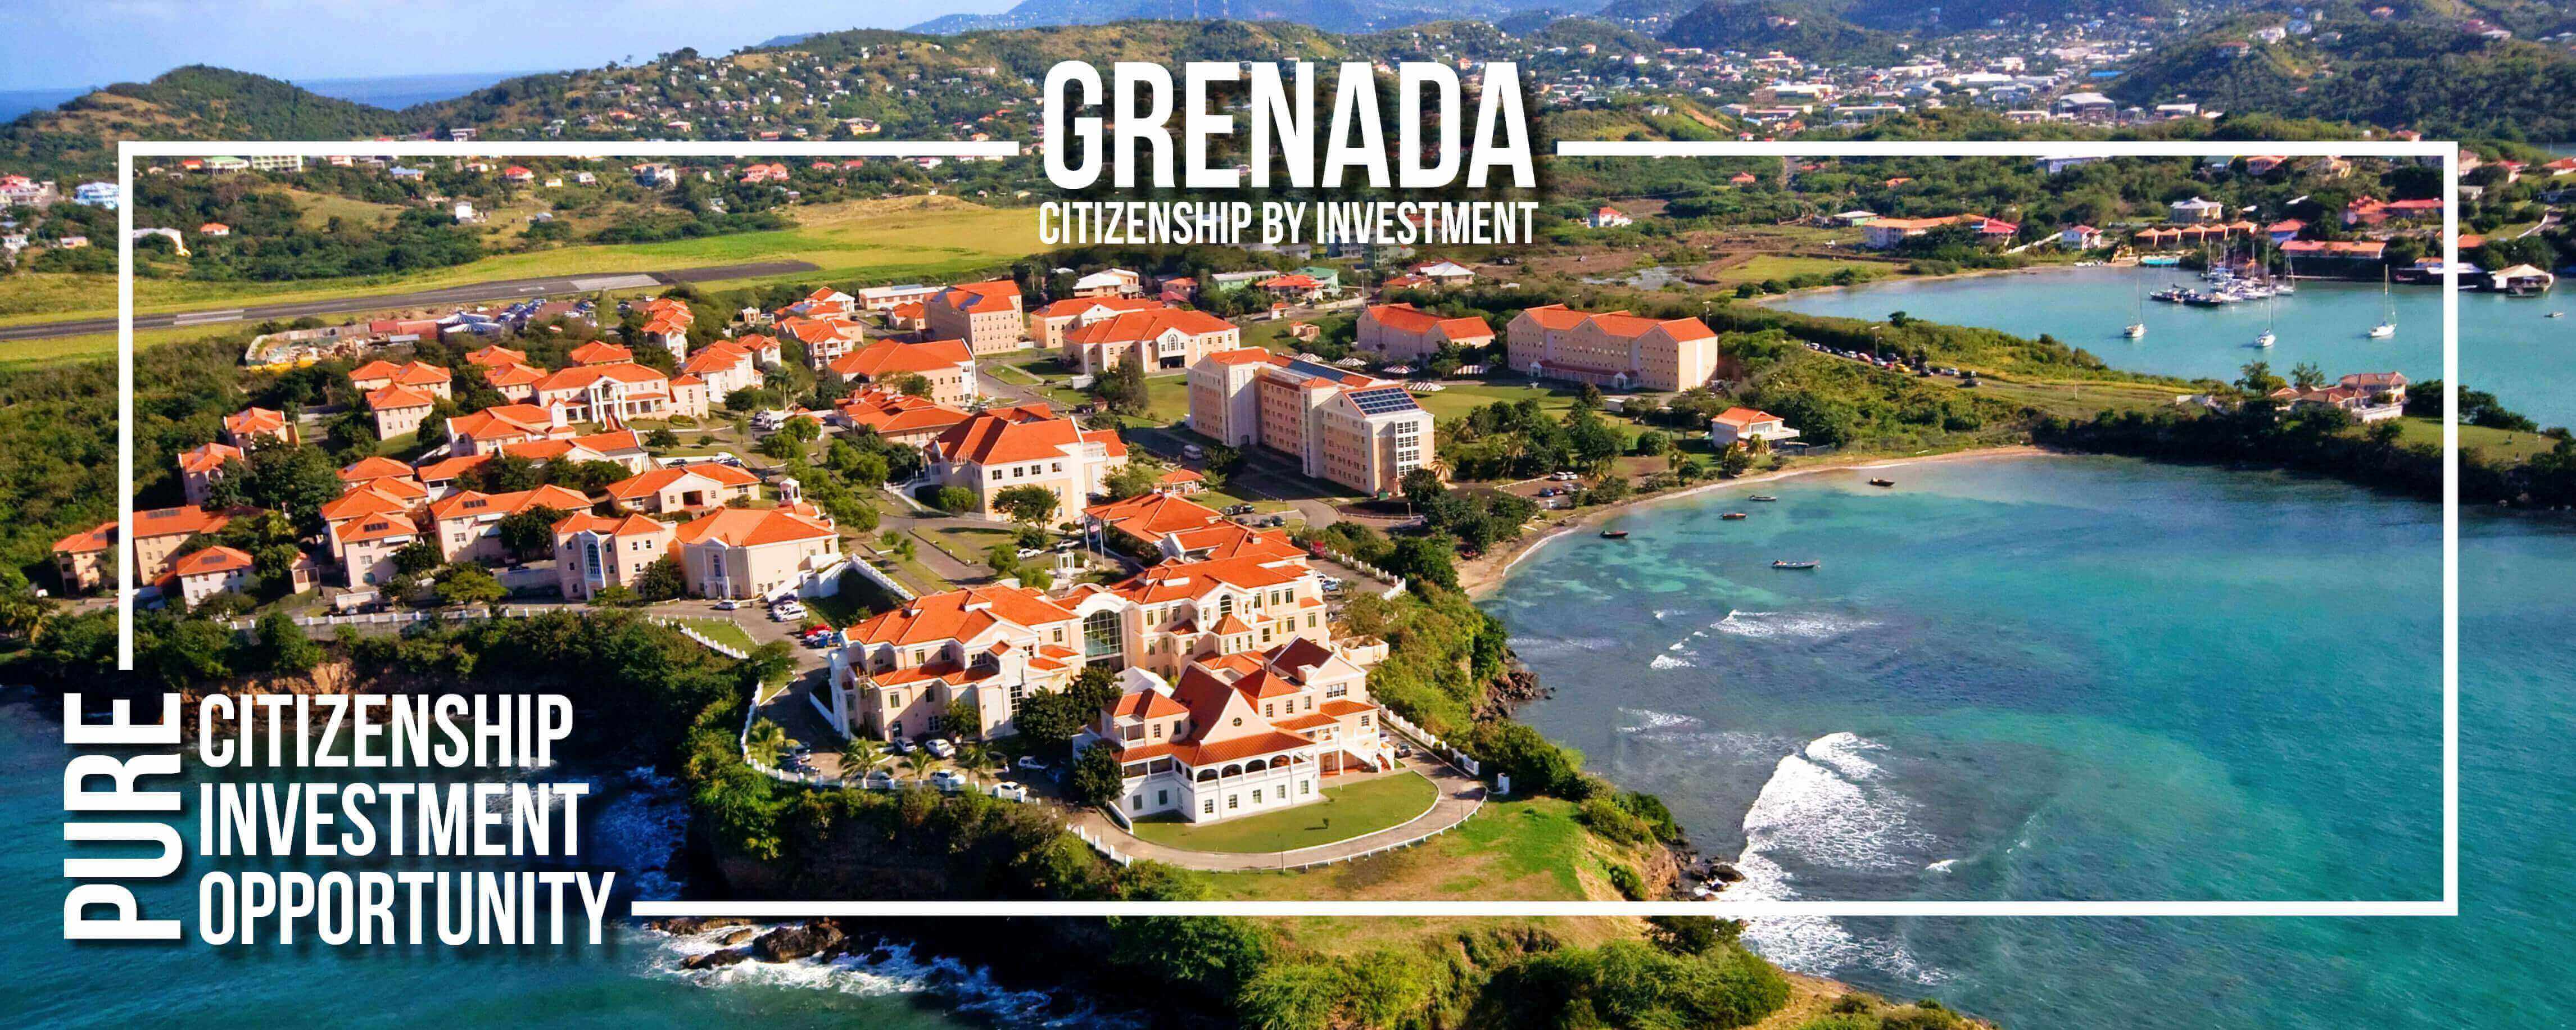 Grenada còn là quốc gia duy nhất ở khu vực Caribbean có cơ hội du lịch, sinh sống, học tập và làm việc tại Hoa Kỳ